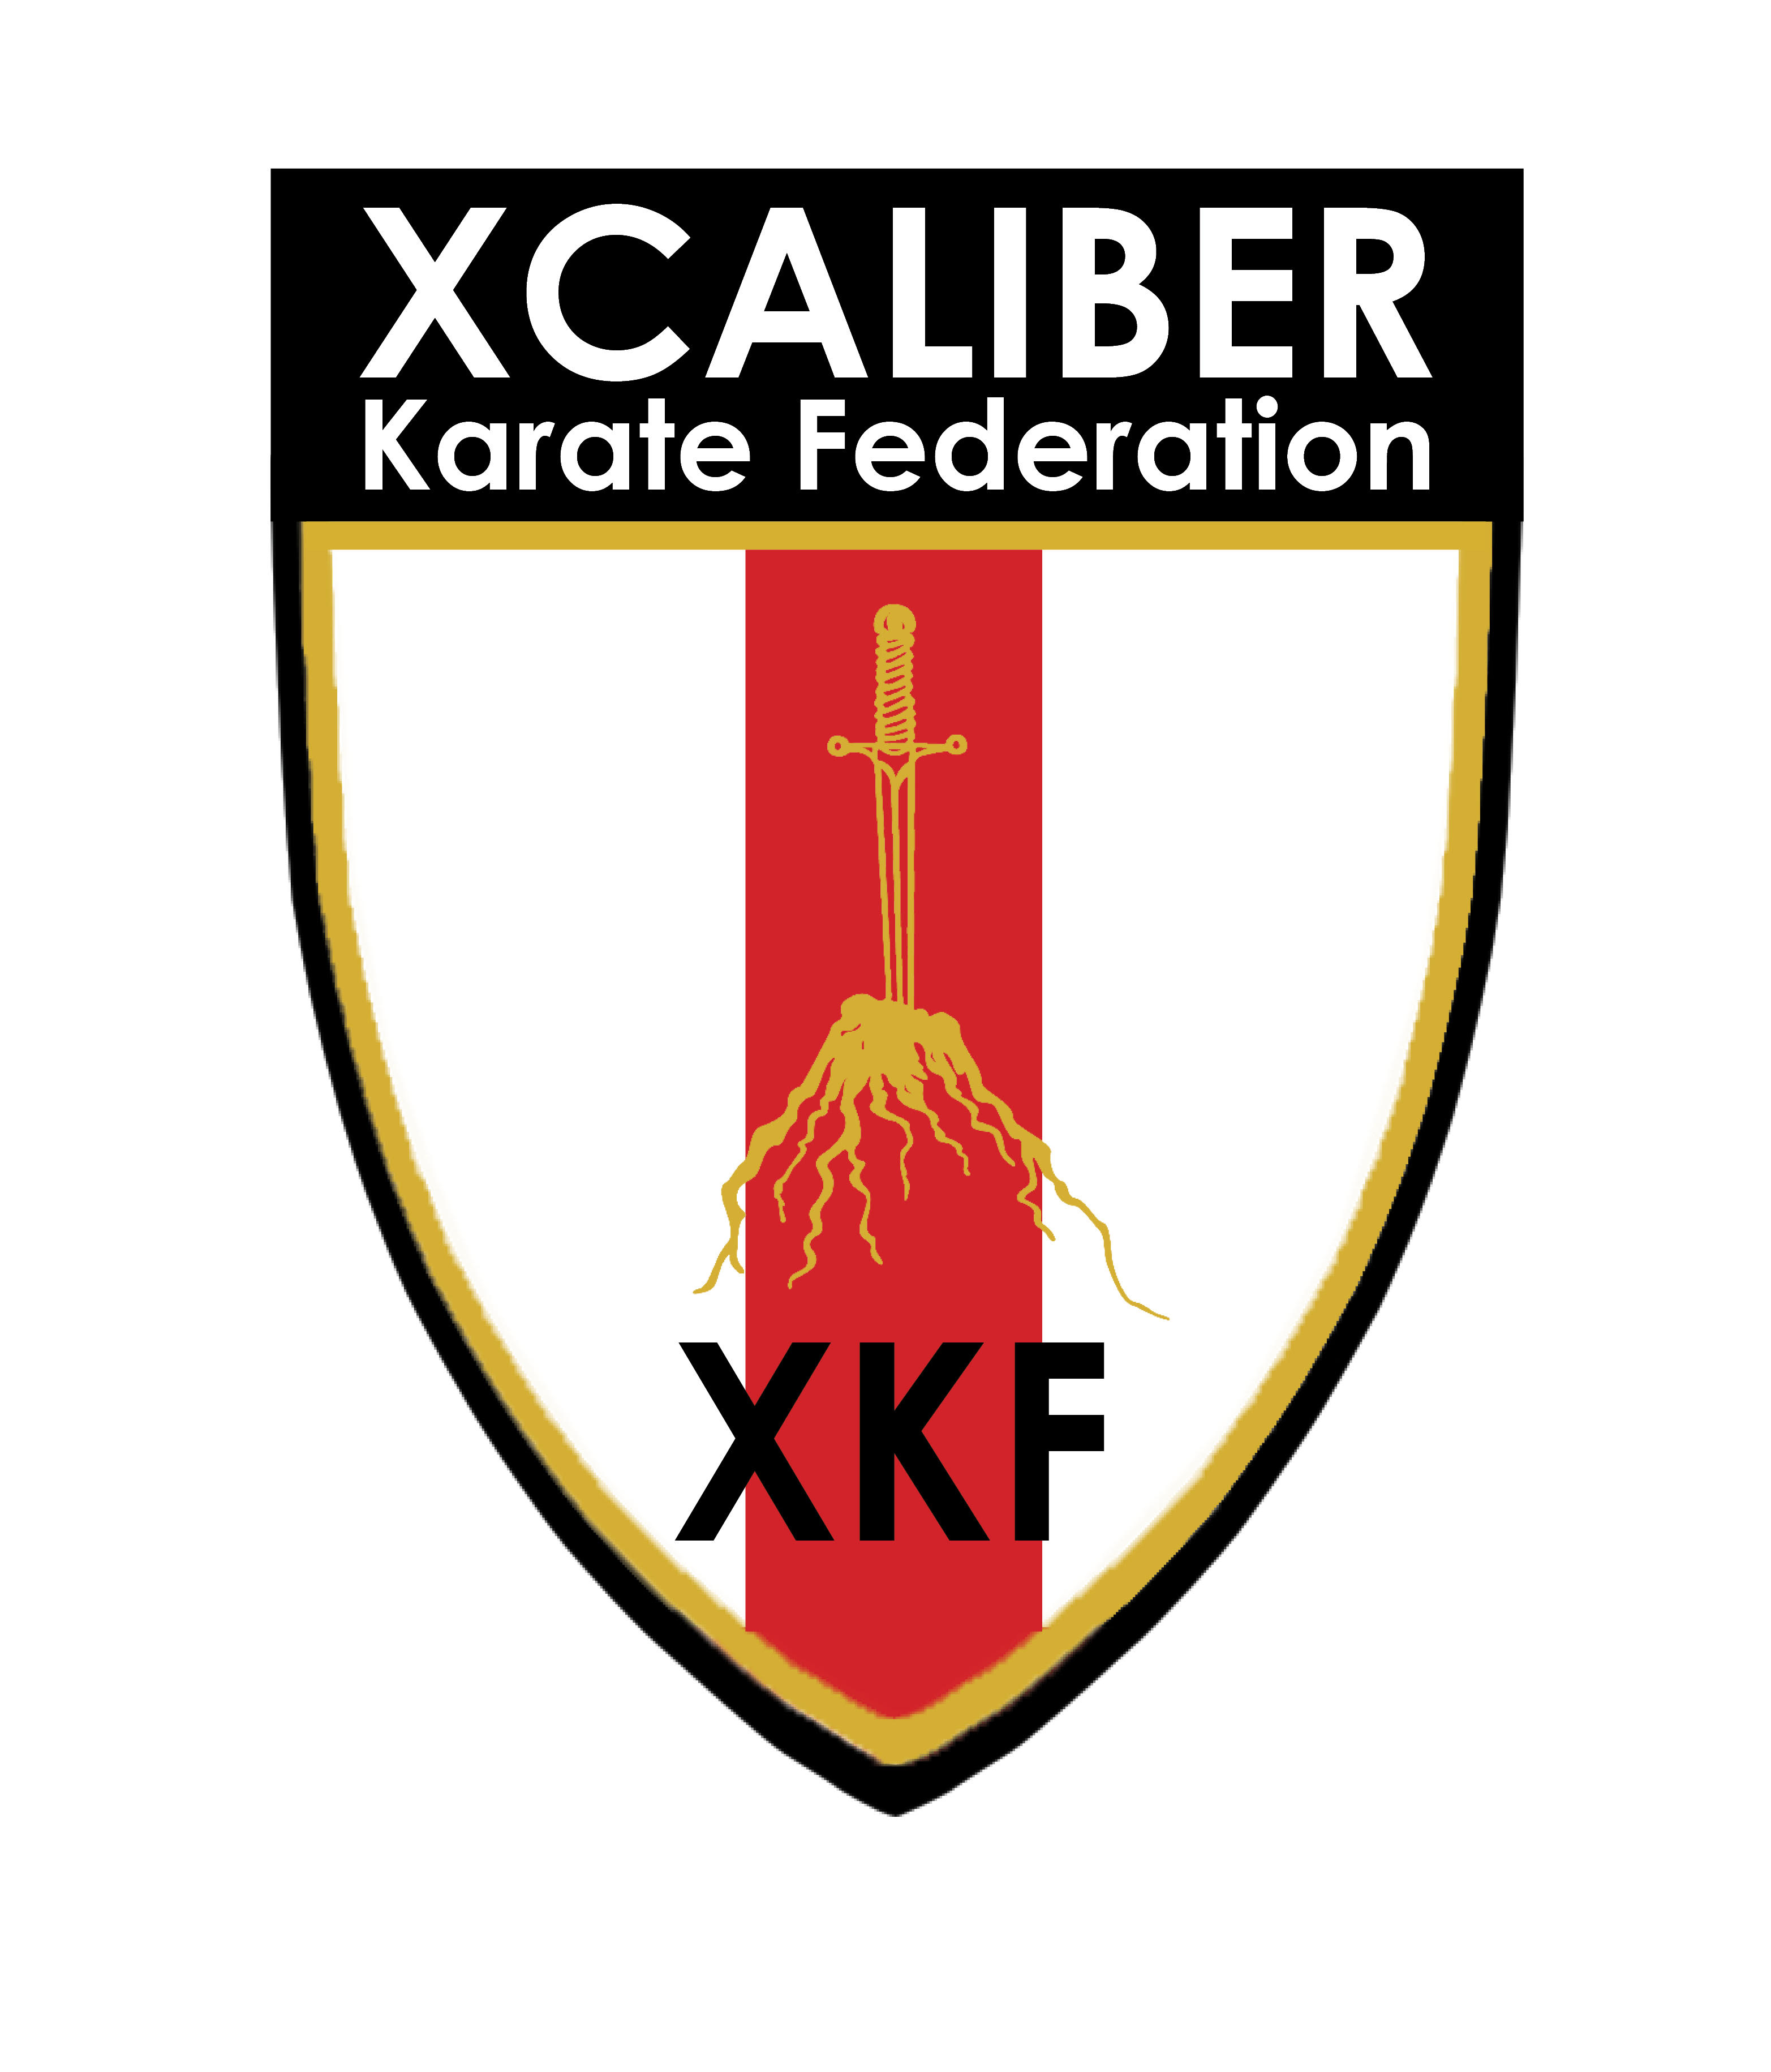 XKF Xcaliber Karate Federation